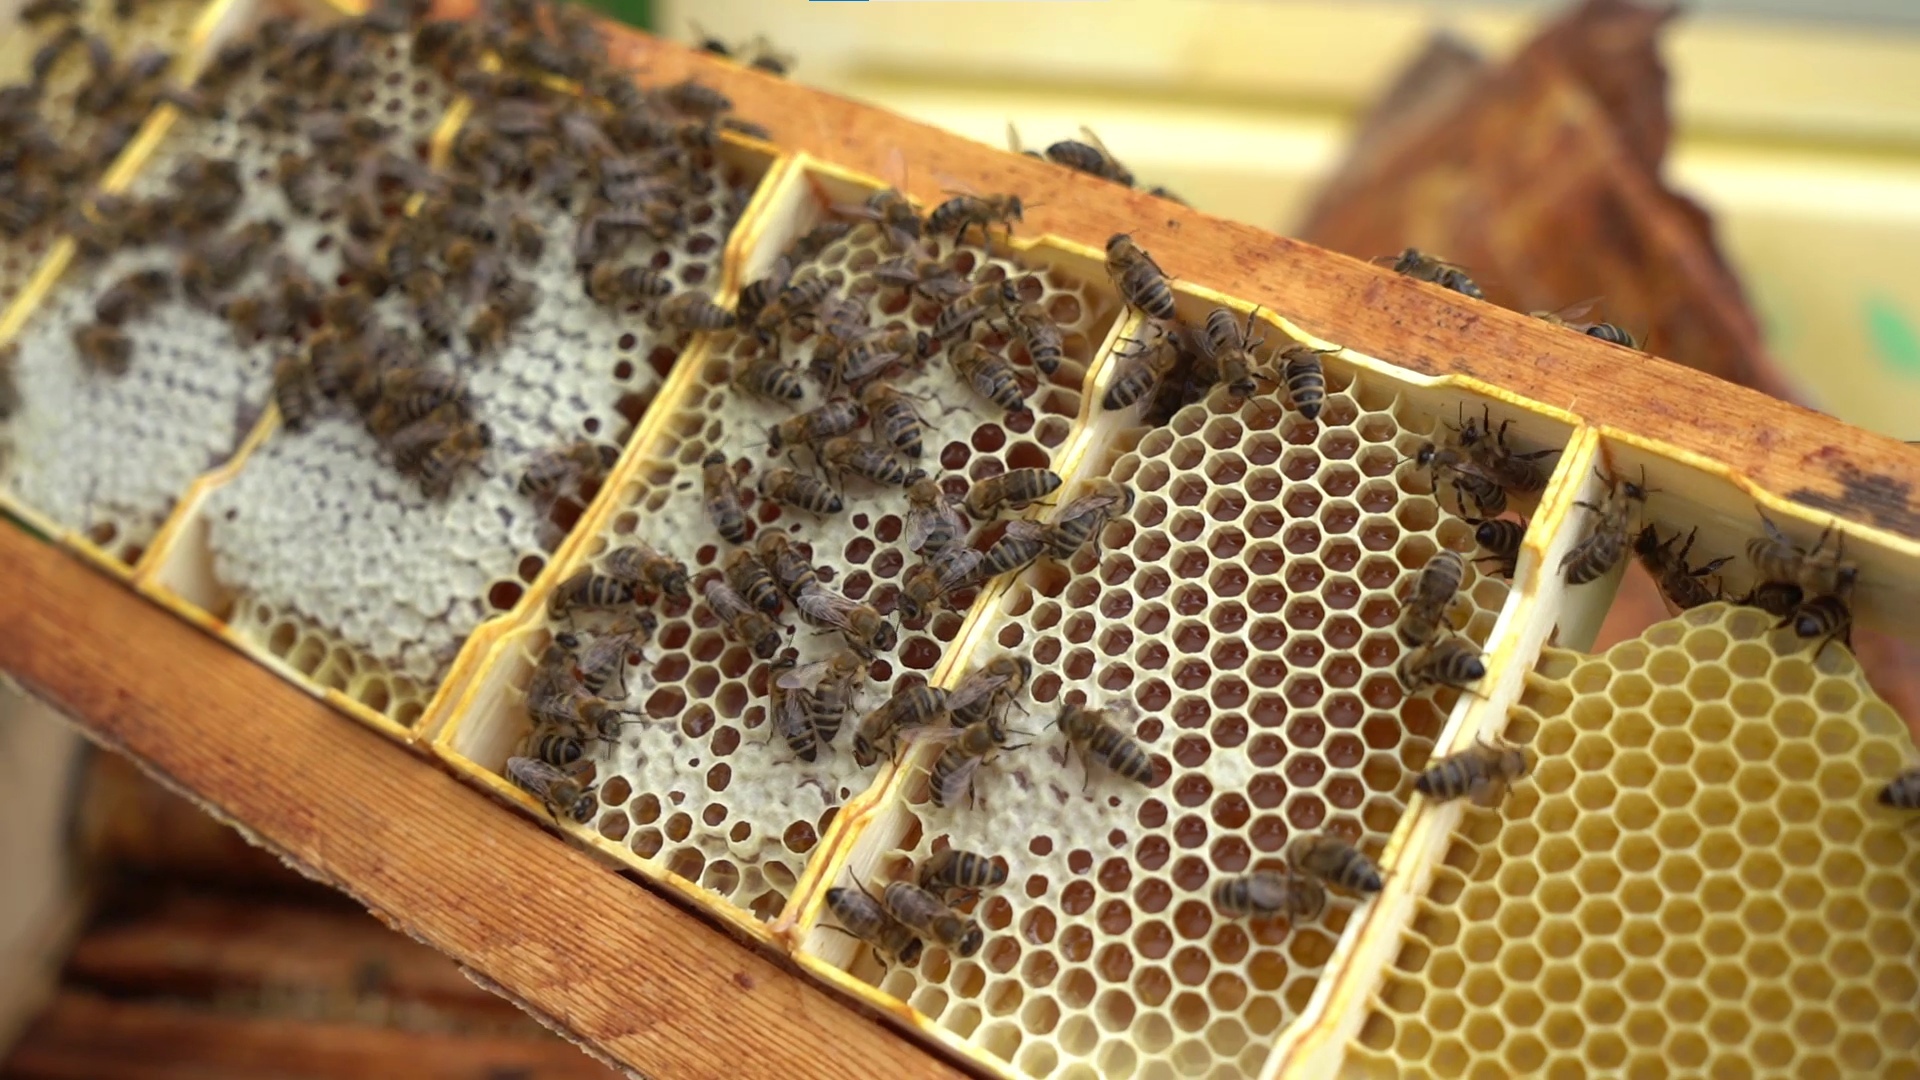 Фермеру из Тульской области выплатят 1,8 млн рублей за гибель пчел